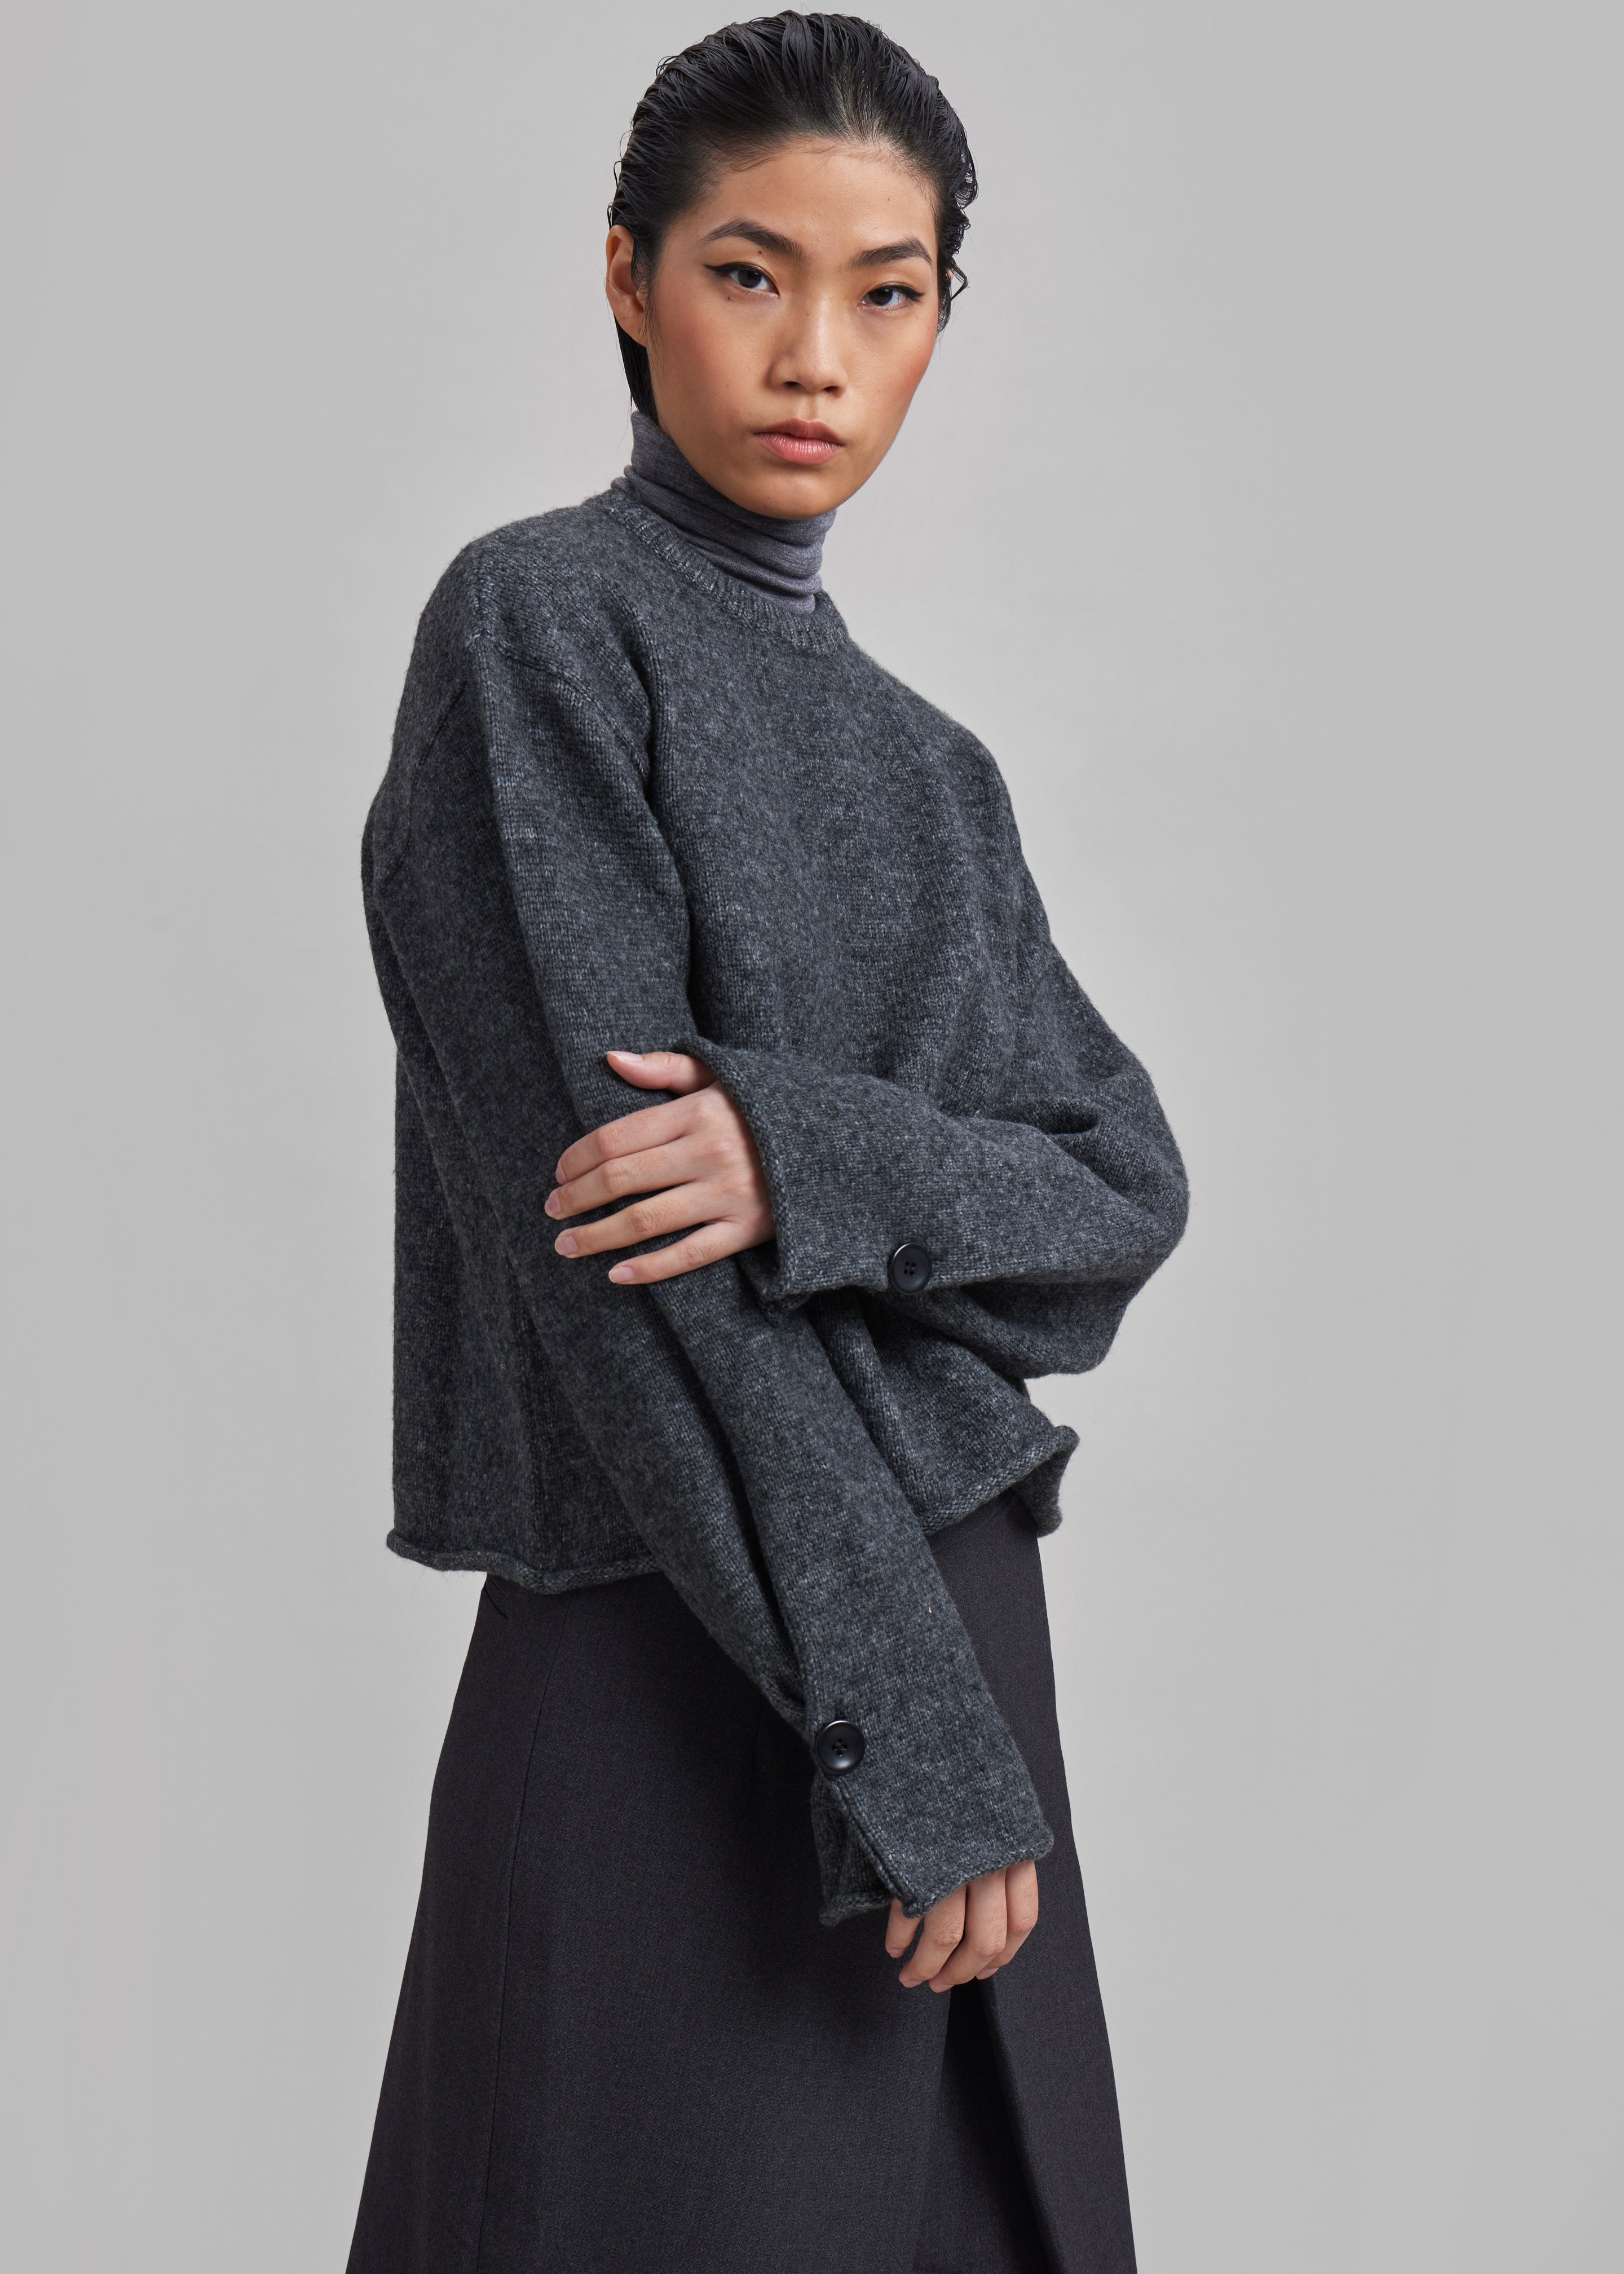 Women's Sweaters – Frankie Shop Europe